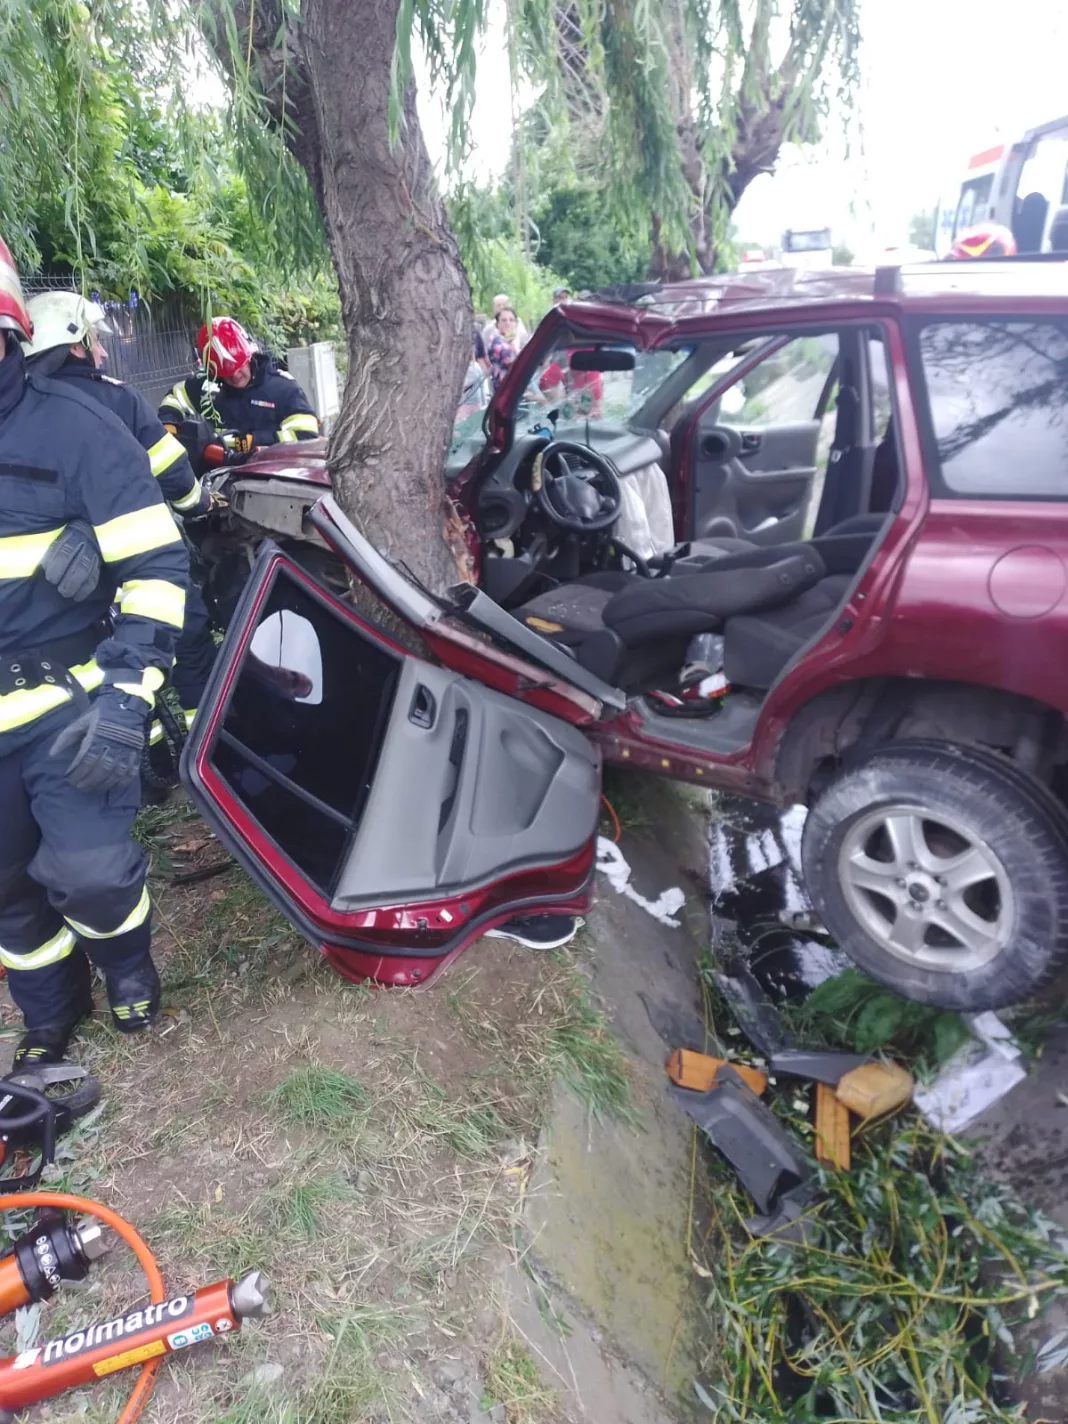 Prahoveni, răniți într-un accident în Râmnicu Vâlcea